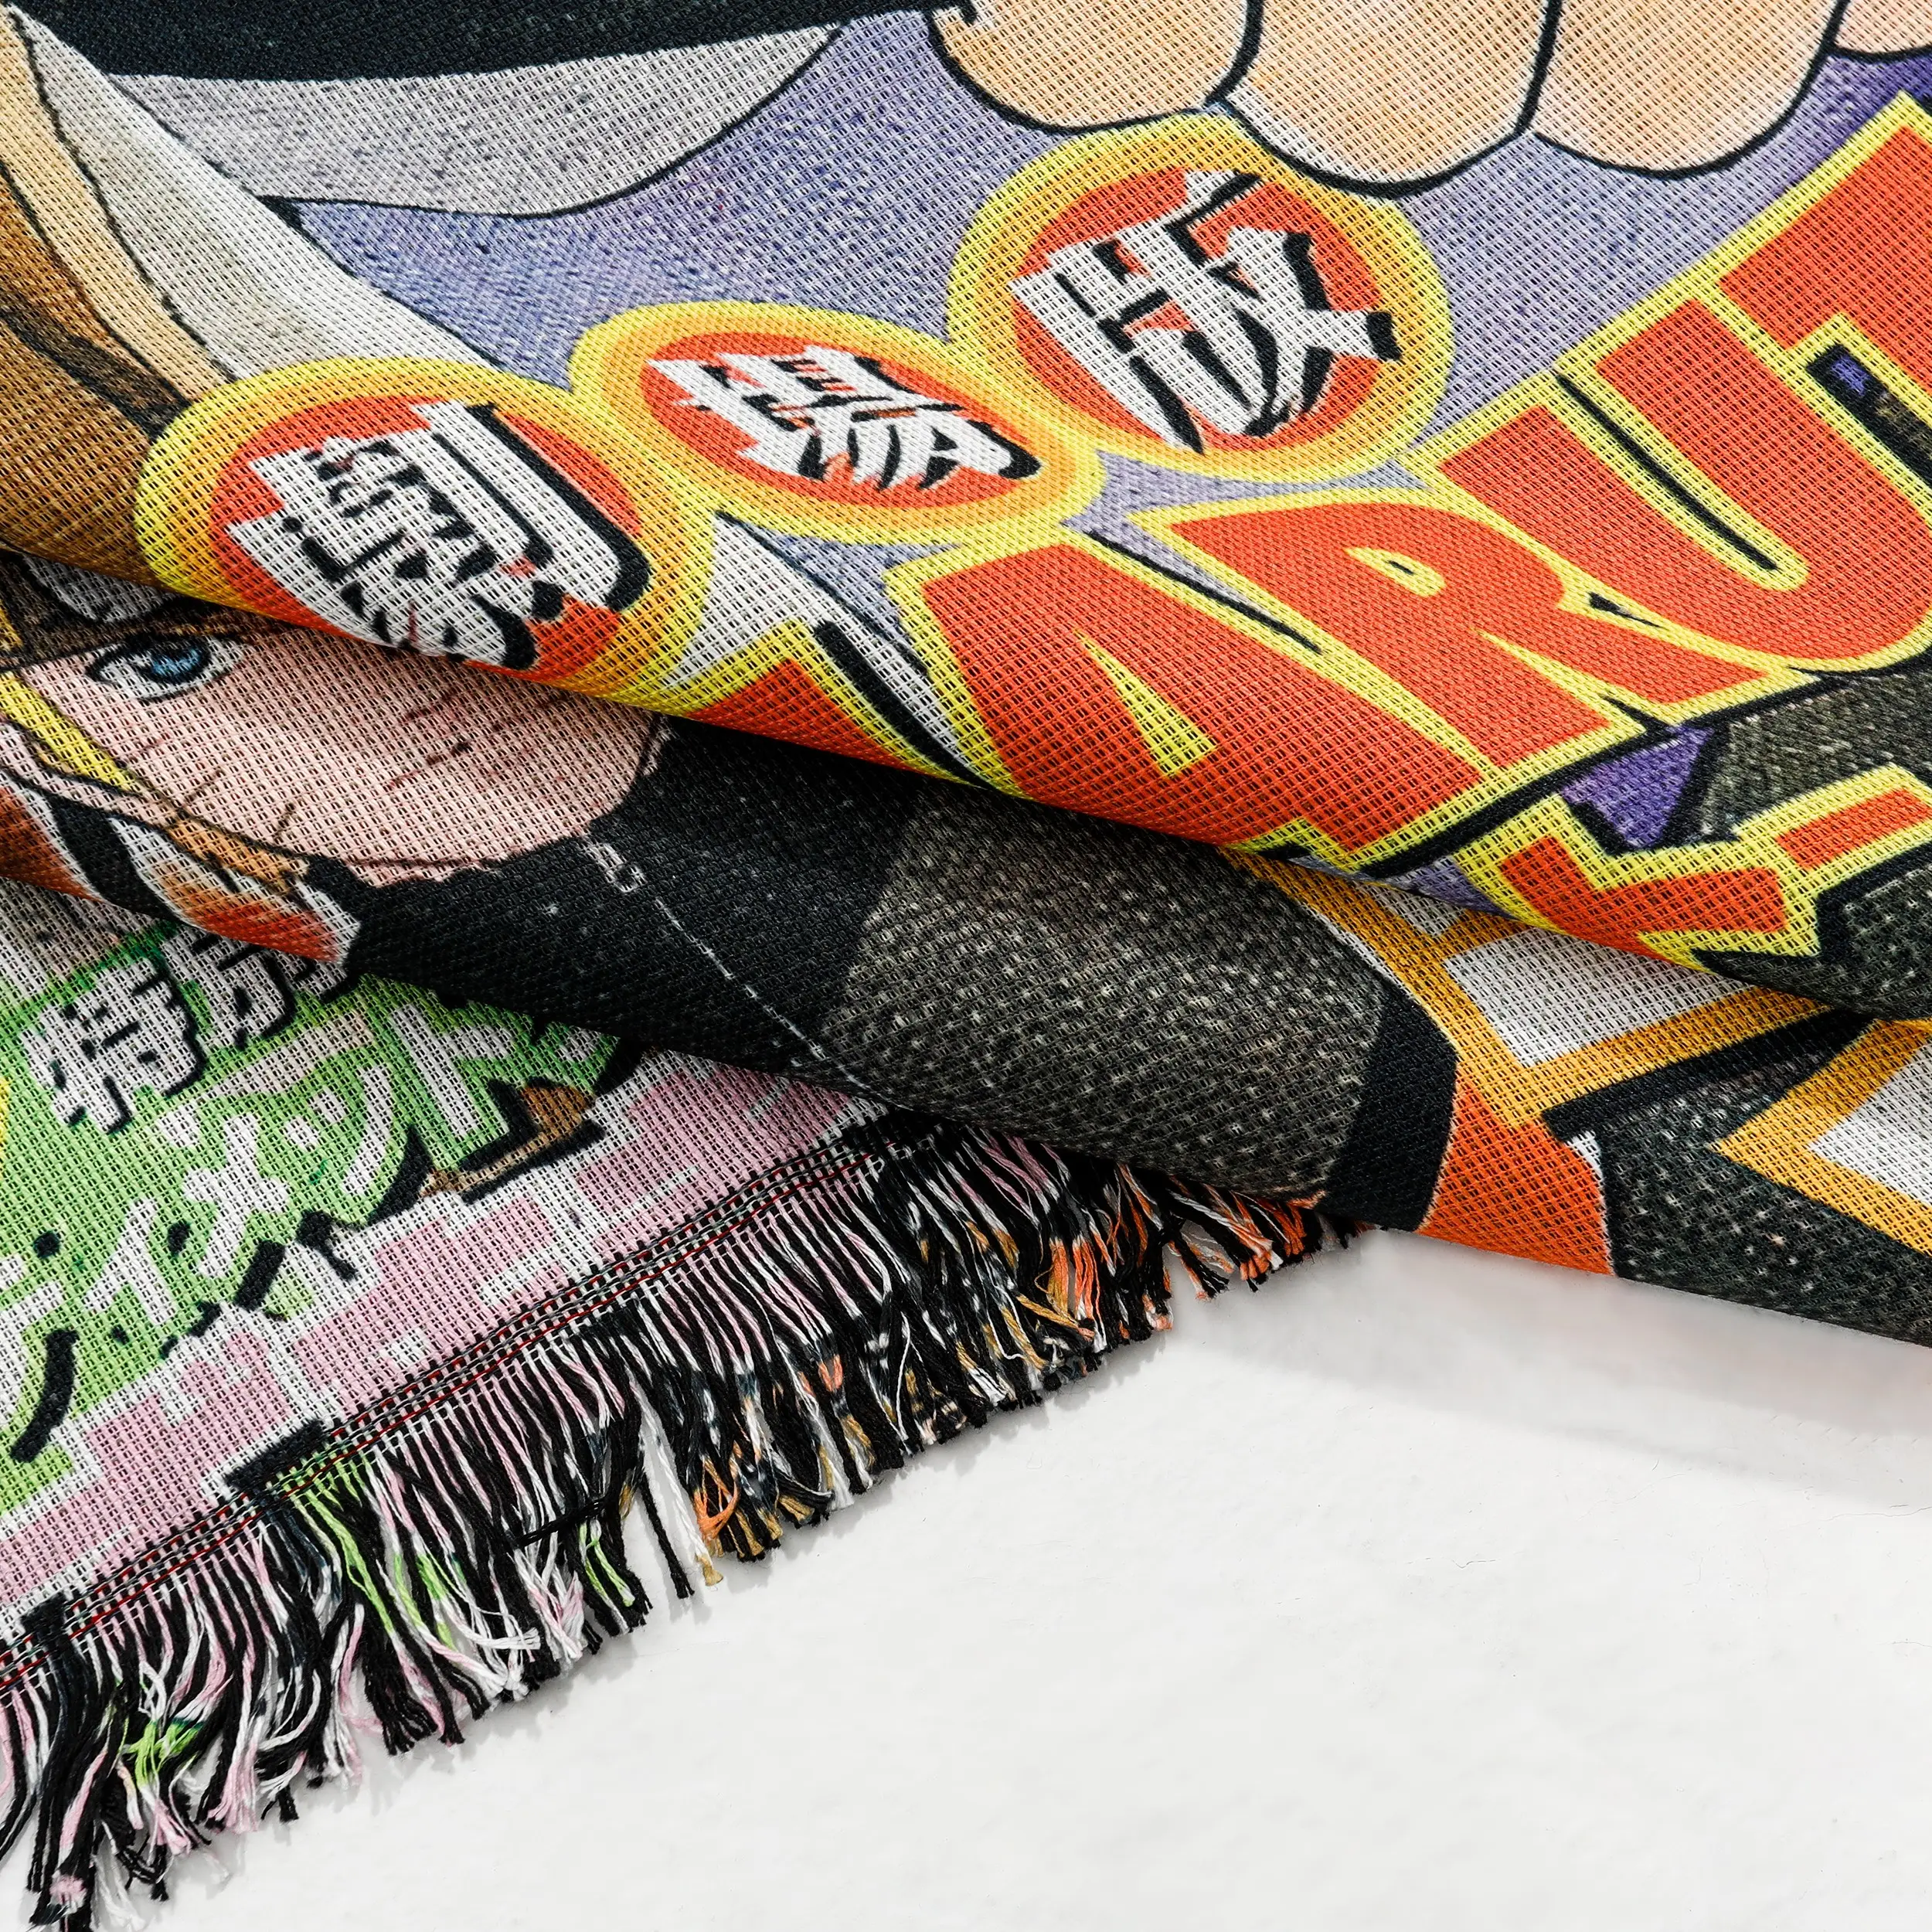 Bande dessinée personnalisée anime tapisserie imprimé coton polyester tapisserie tricoté tissé couverture fil jeter